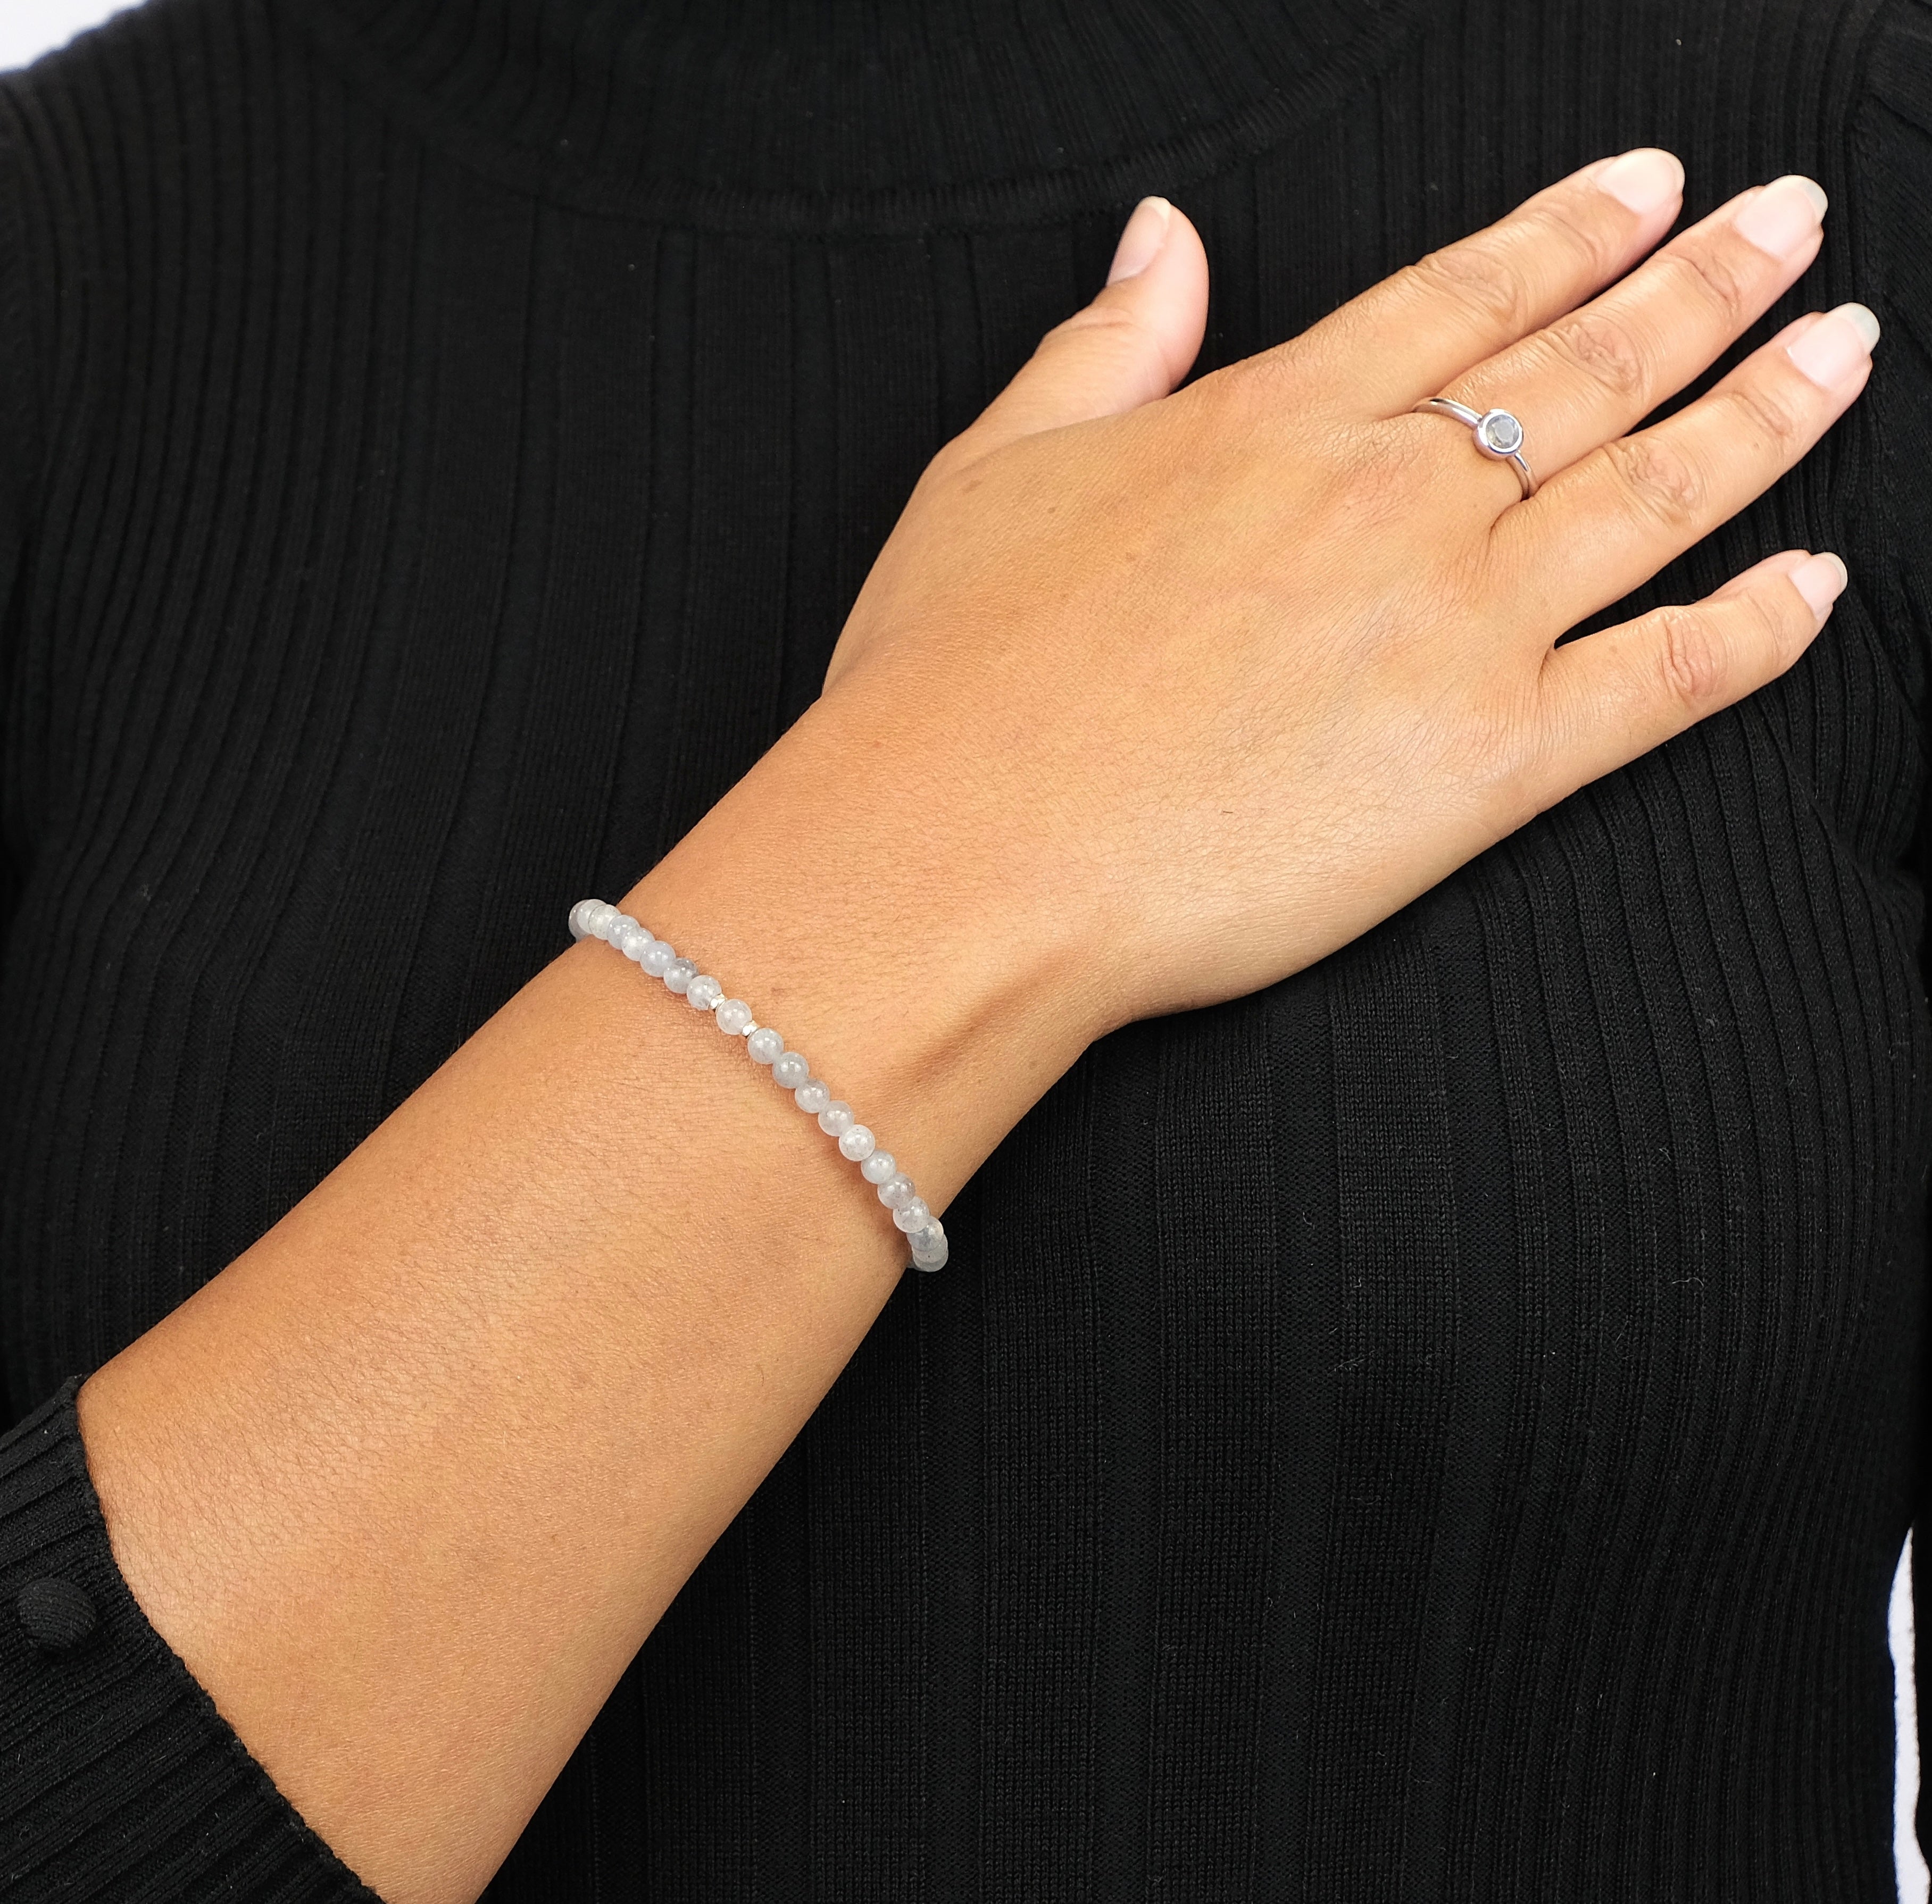 labradorite bracelet 4mm gemstones being worn with silver accents